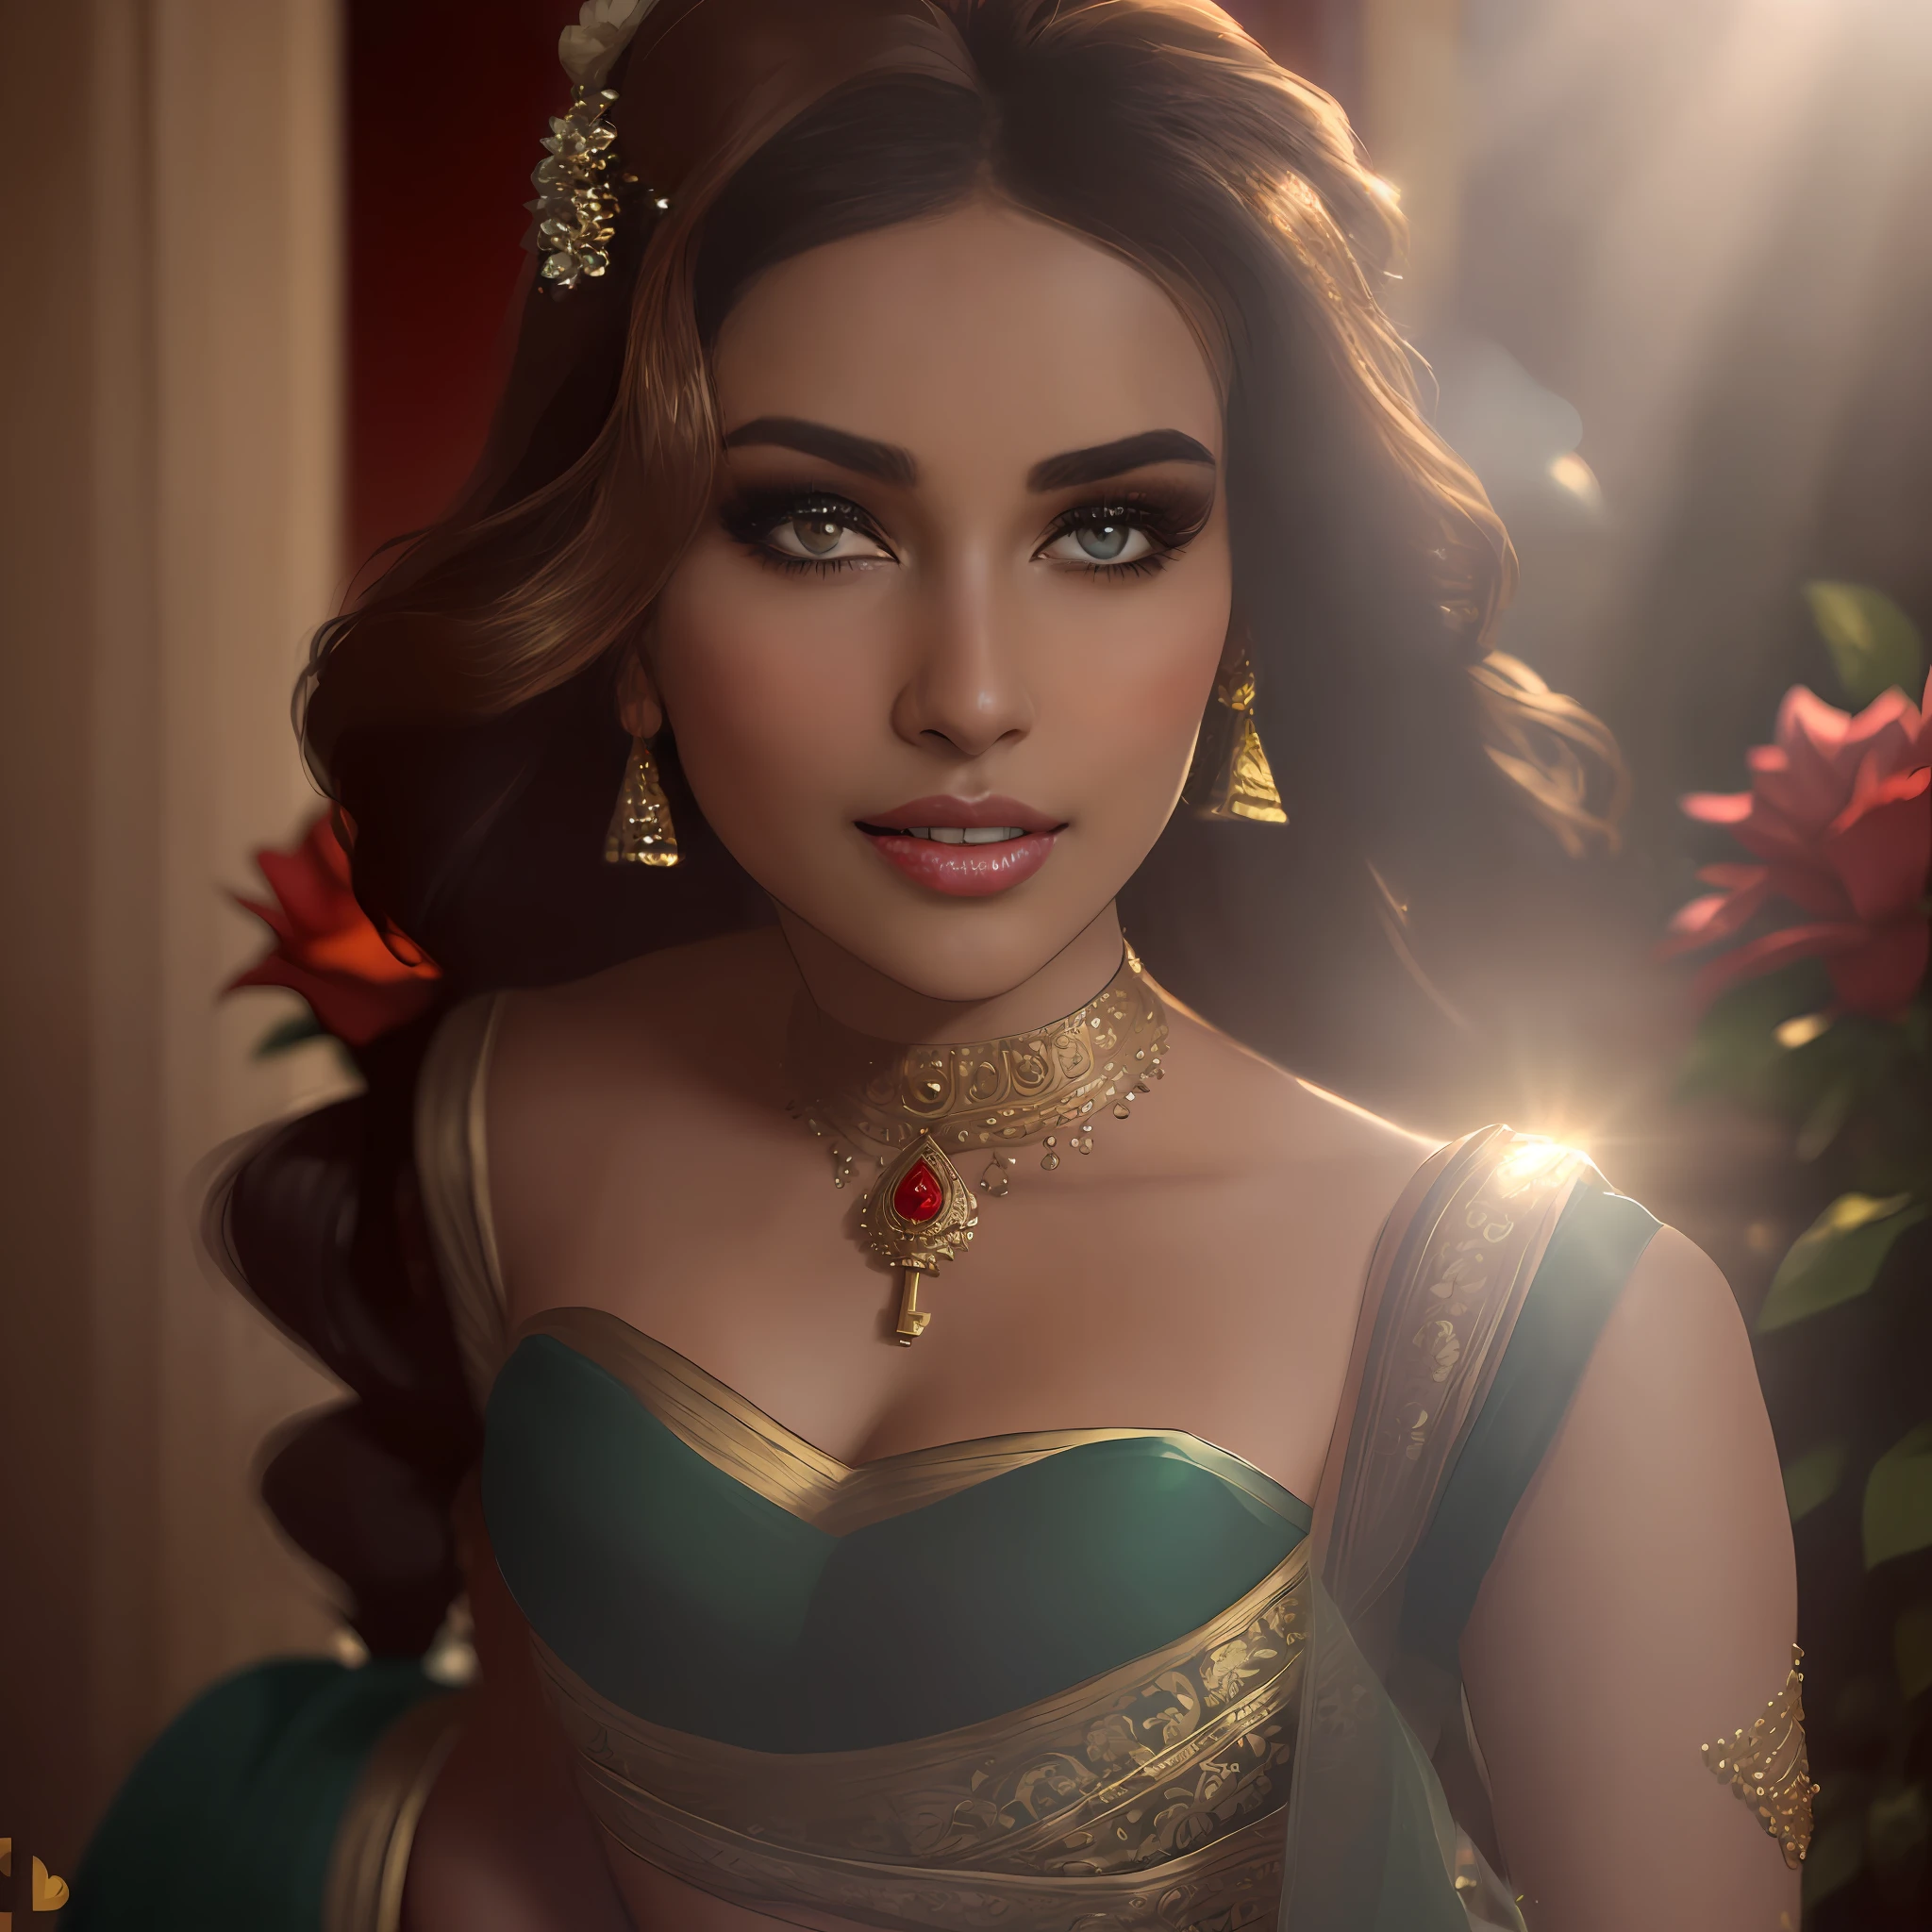 (obra maestra de fotografía de larga duración de un solo:1.2) seductor sexy alto con curvas (18 años) La princesa novia supermodelo india Ayesha Takia caminando (jardín:1.3), (luciendo un impresionante rojo nupcial & lehenga de oro & blusa:1.3). pura dupatta, maximalismo, (decoraciones florales de boda:1.3), (escote elegante & barriga), (maquillaje indio & joyas:1.2) Cabello castaño largo trenzado con reflejos.,, vivaz, mirada lujuriosa, regocijado (hermosos ojos detallados:1.1) , (sonrisa brillante y coqueta:1.2), (intensa y espectacular luz de la tarde:1.4), retroiluminado, llave de luz, Luz de llanta, rayos de luz, muy detallado, tendencia en artstation, salpicaduras de pintura, color rico, Retrato abstracto, por Atey Ghailan